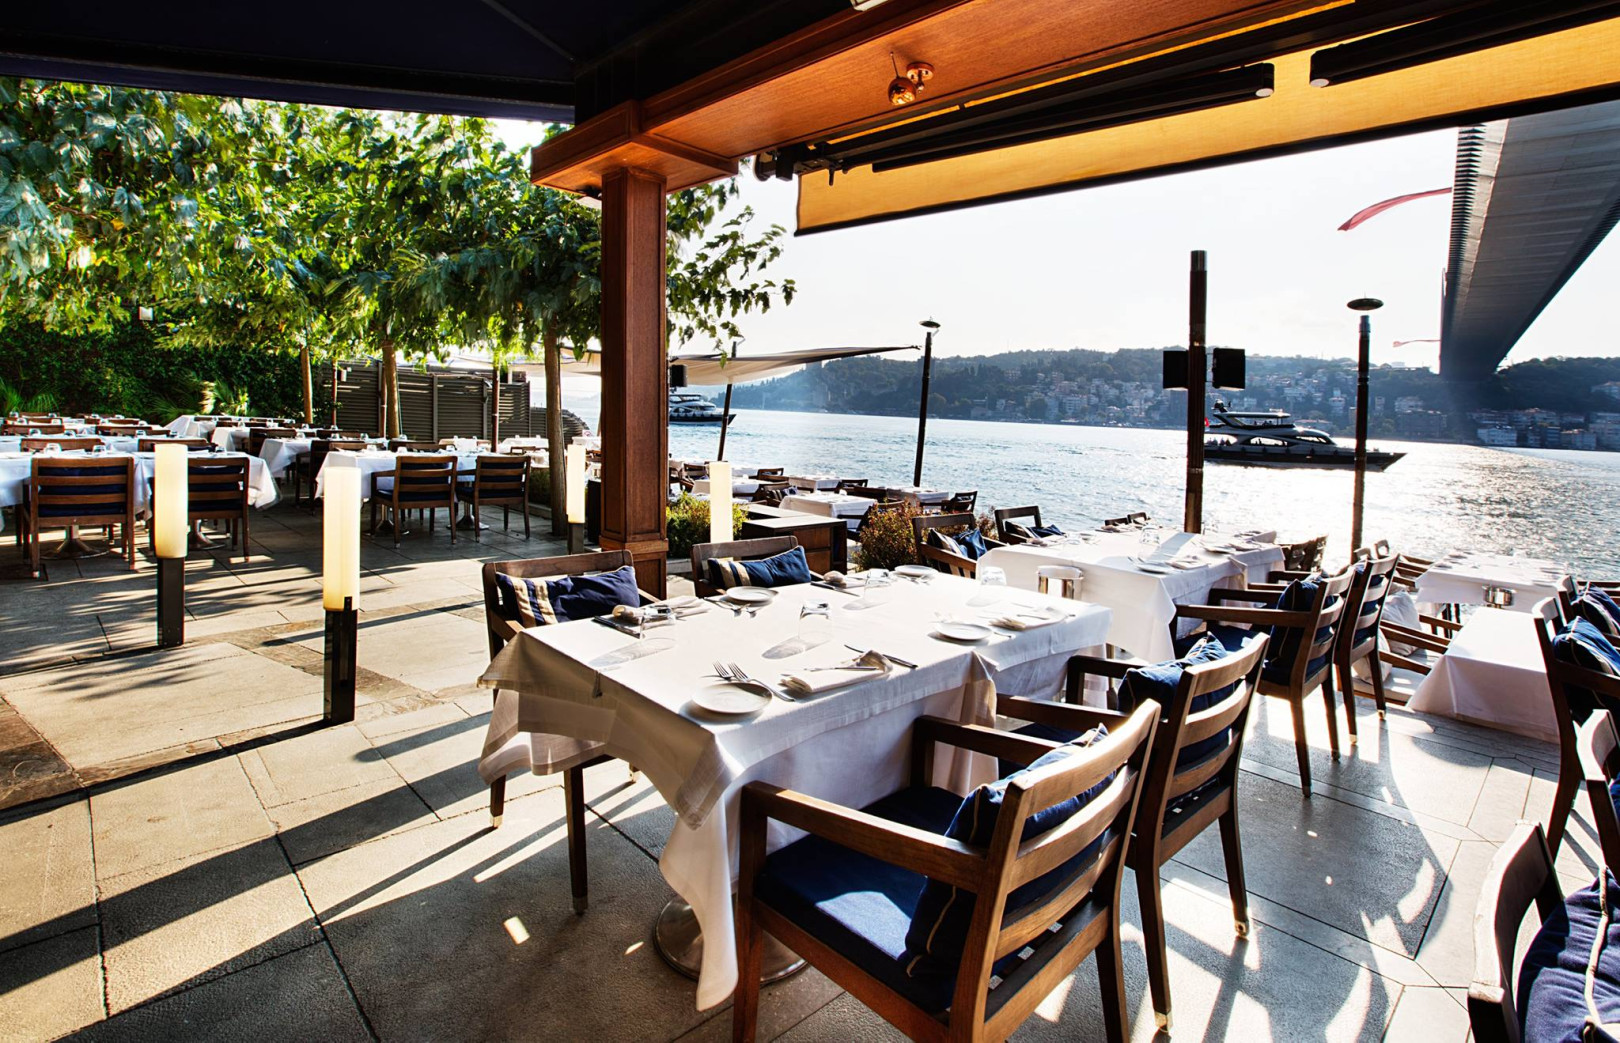 Lacivert Restaurant - İstanbul Davet Alanları - Fiyatlar | DüğünBuketi.com